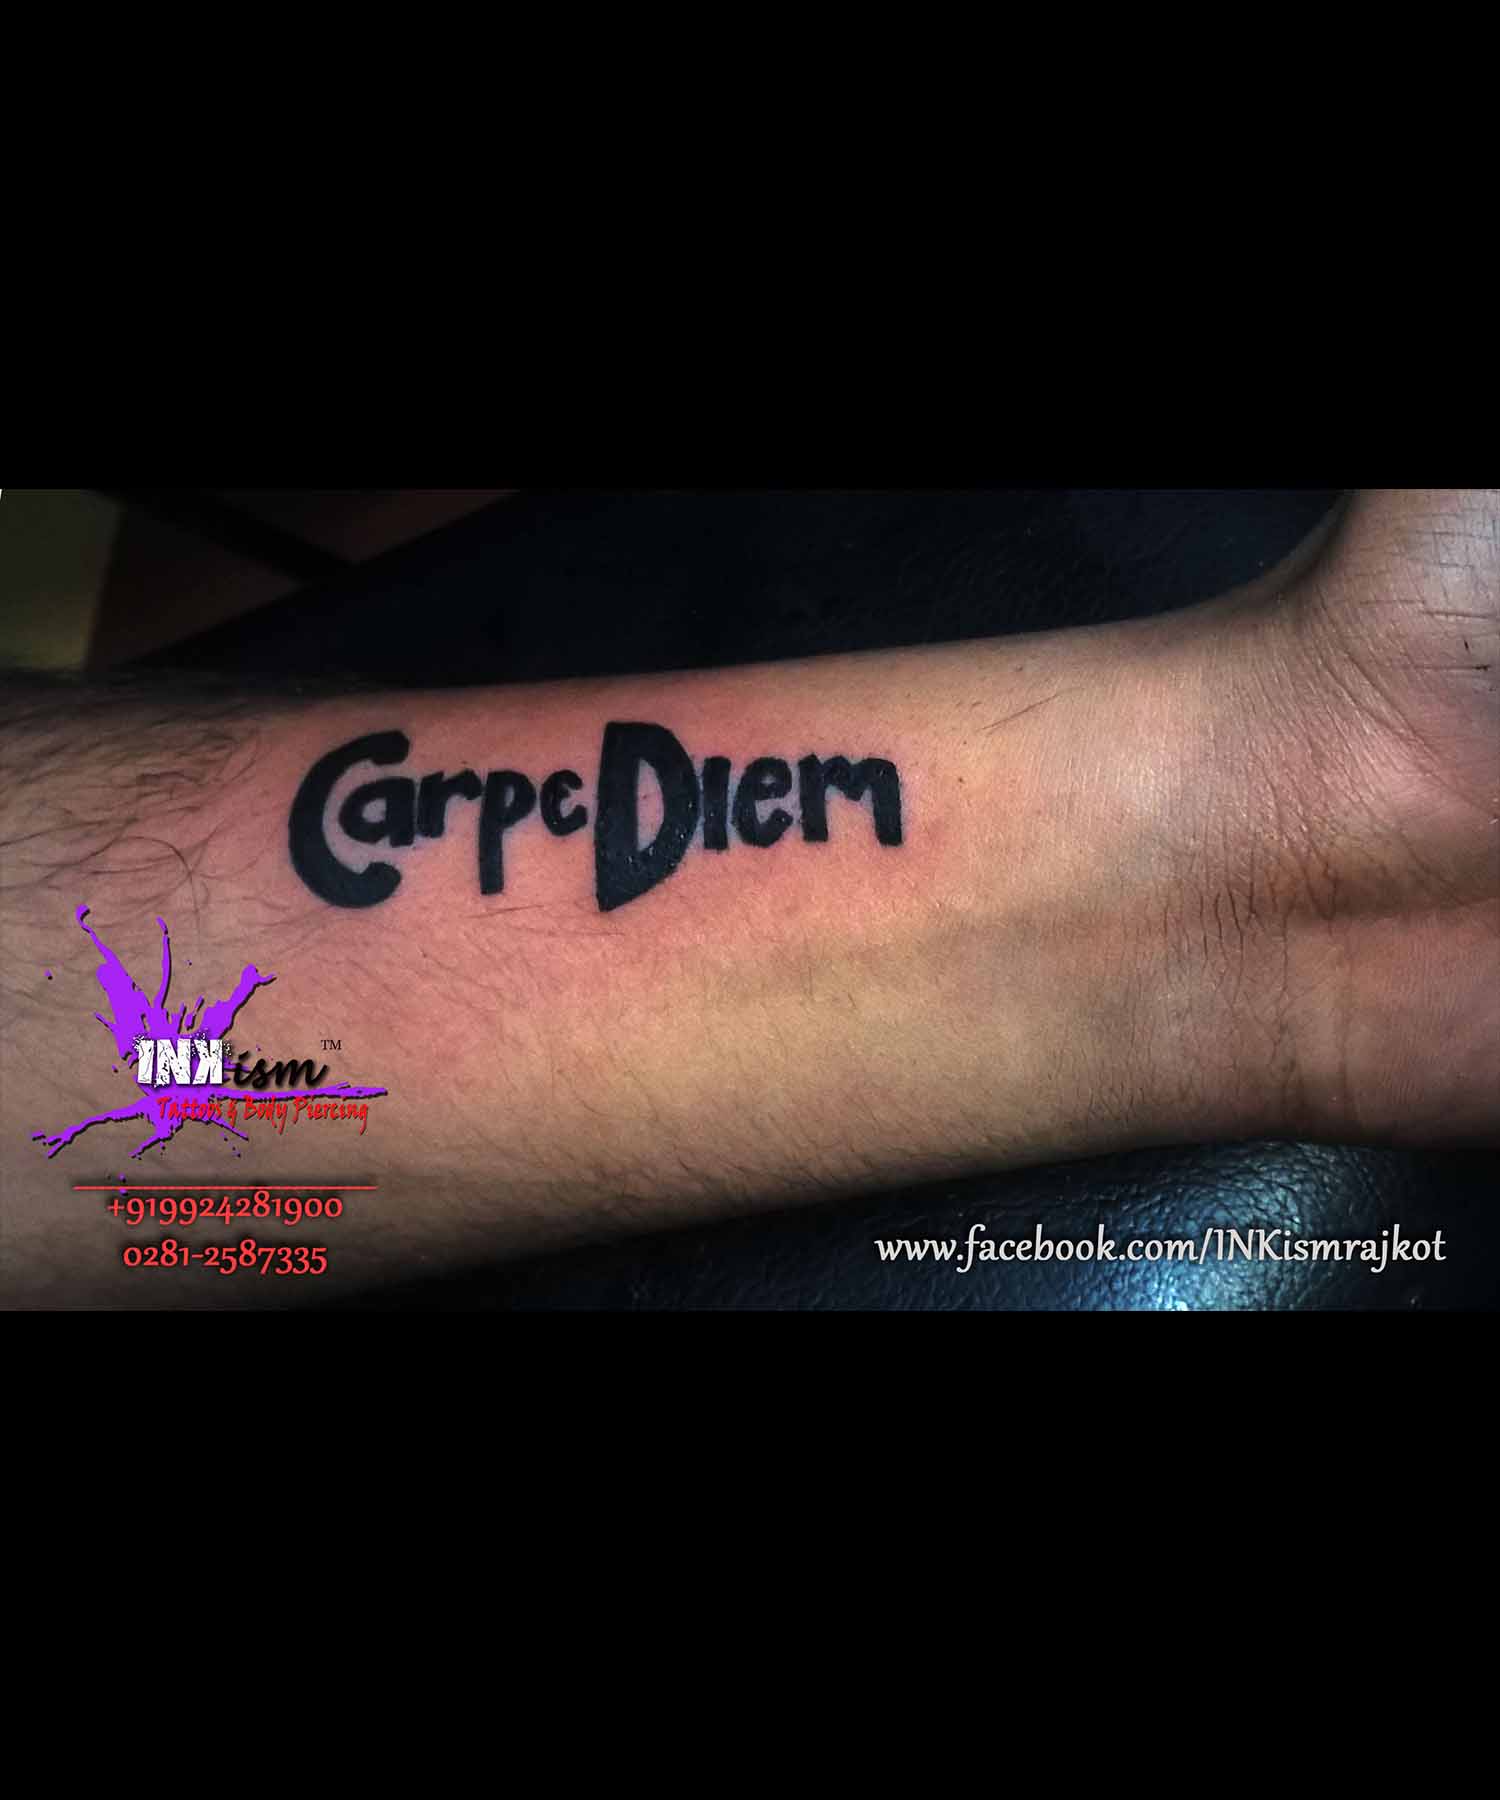 Carpediem Tattoo, life Goals, Death Goals, Inkism tattoo and body piercing rajkot gujarat